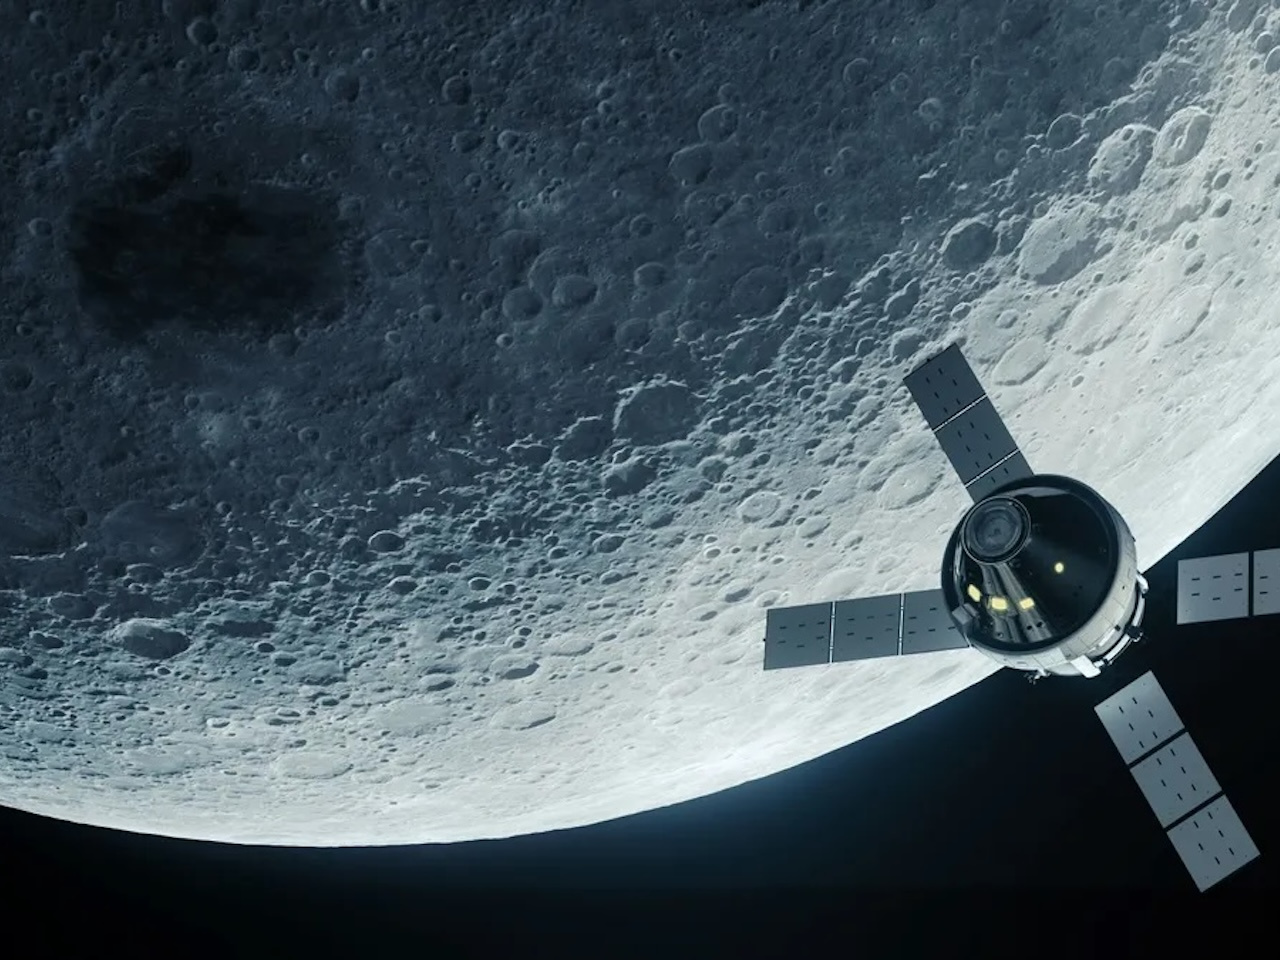 2020年代末までに米国人以外の宇宙飛行士を月面に--米ハリス副大統領が発言